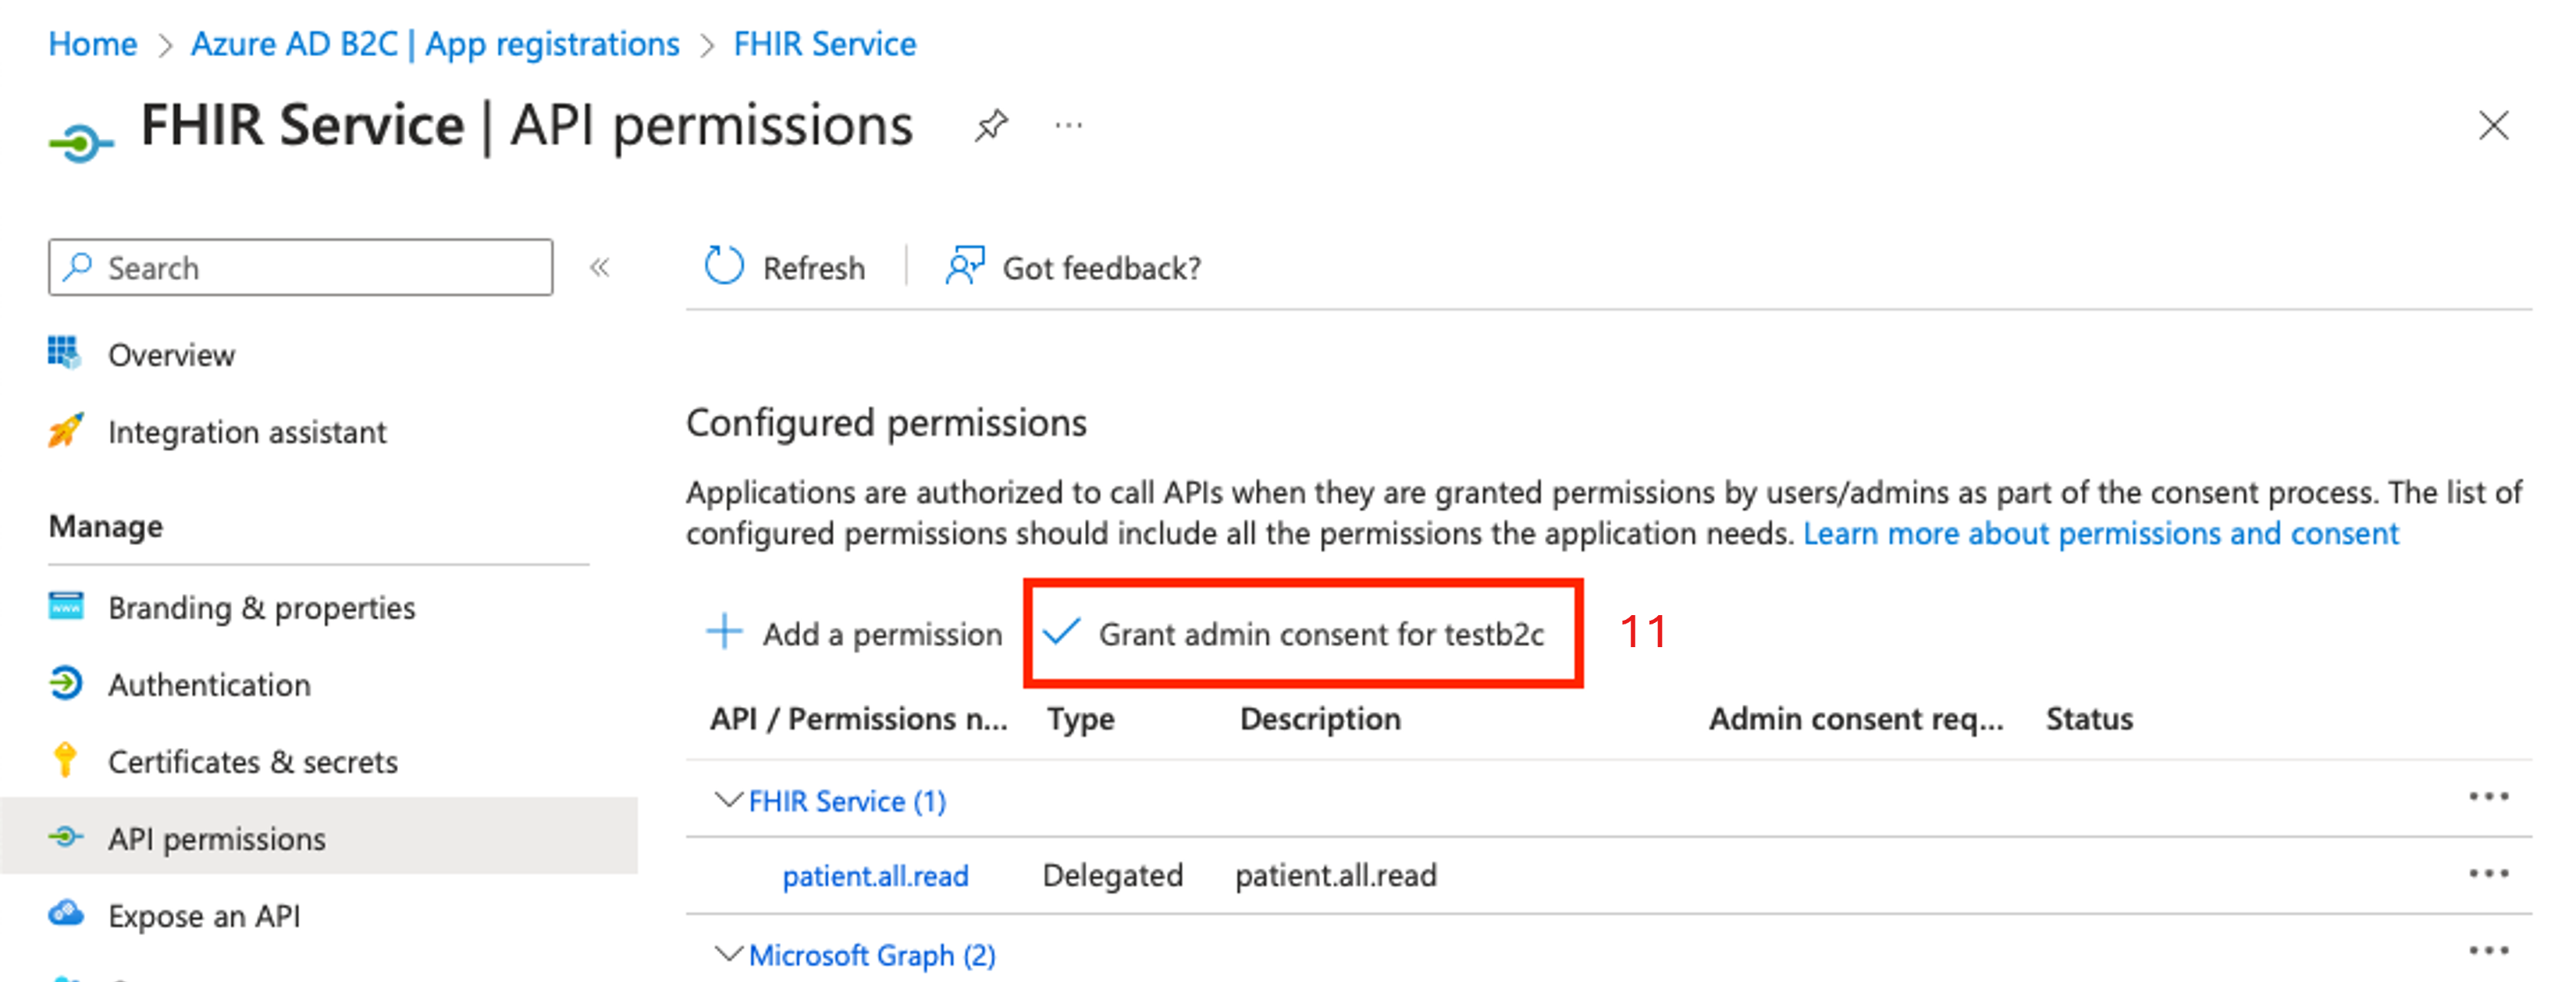 Captura de tela mostrando as permissões da API B2C para consentimento do administrador.